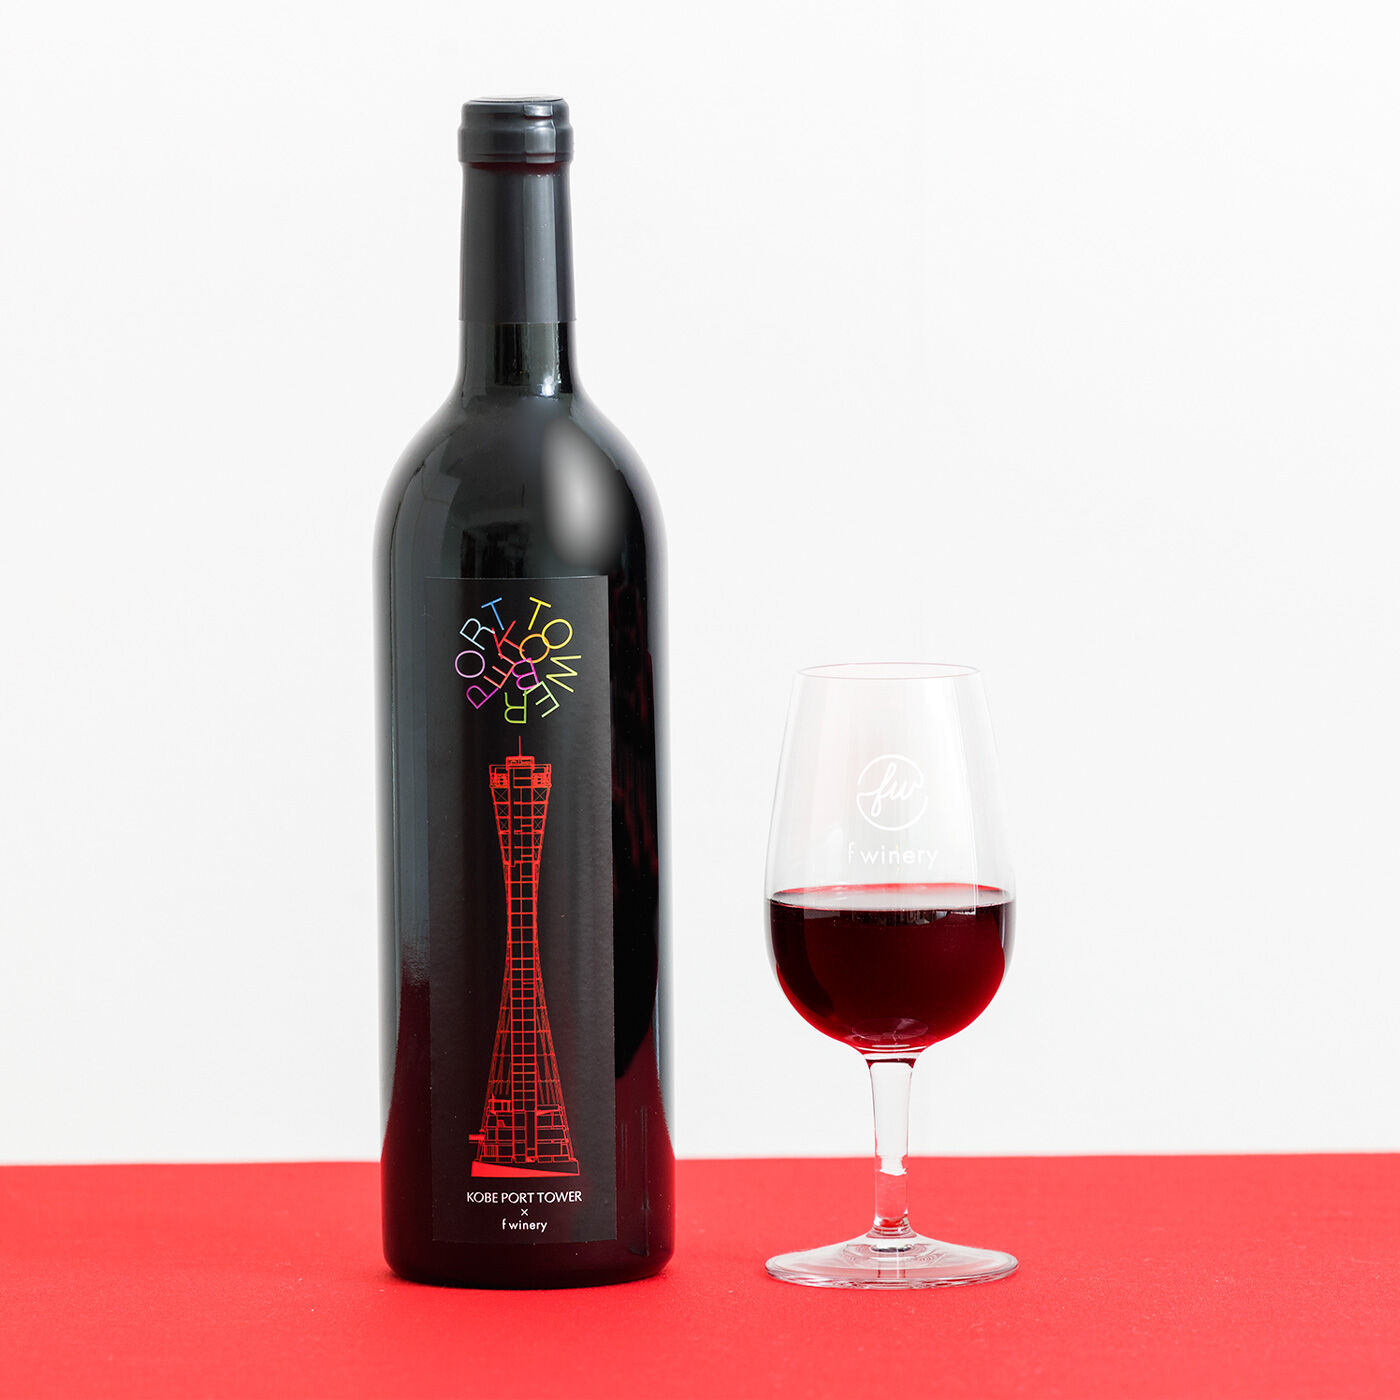 フェリシモコレクション|ブリリアンス神戸基金　KOBE PORT TOWER　f wineryフェリシモワイン醸造所（赤ワイン）|メルロー、甘さと酸味のバランスが良く、口当たりが滑らかな飲みやすいミディアムボディ